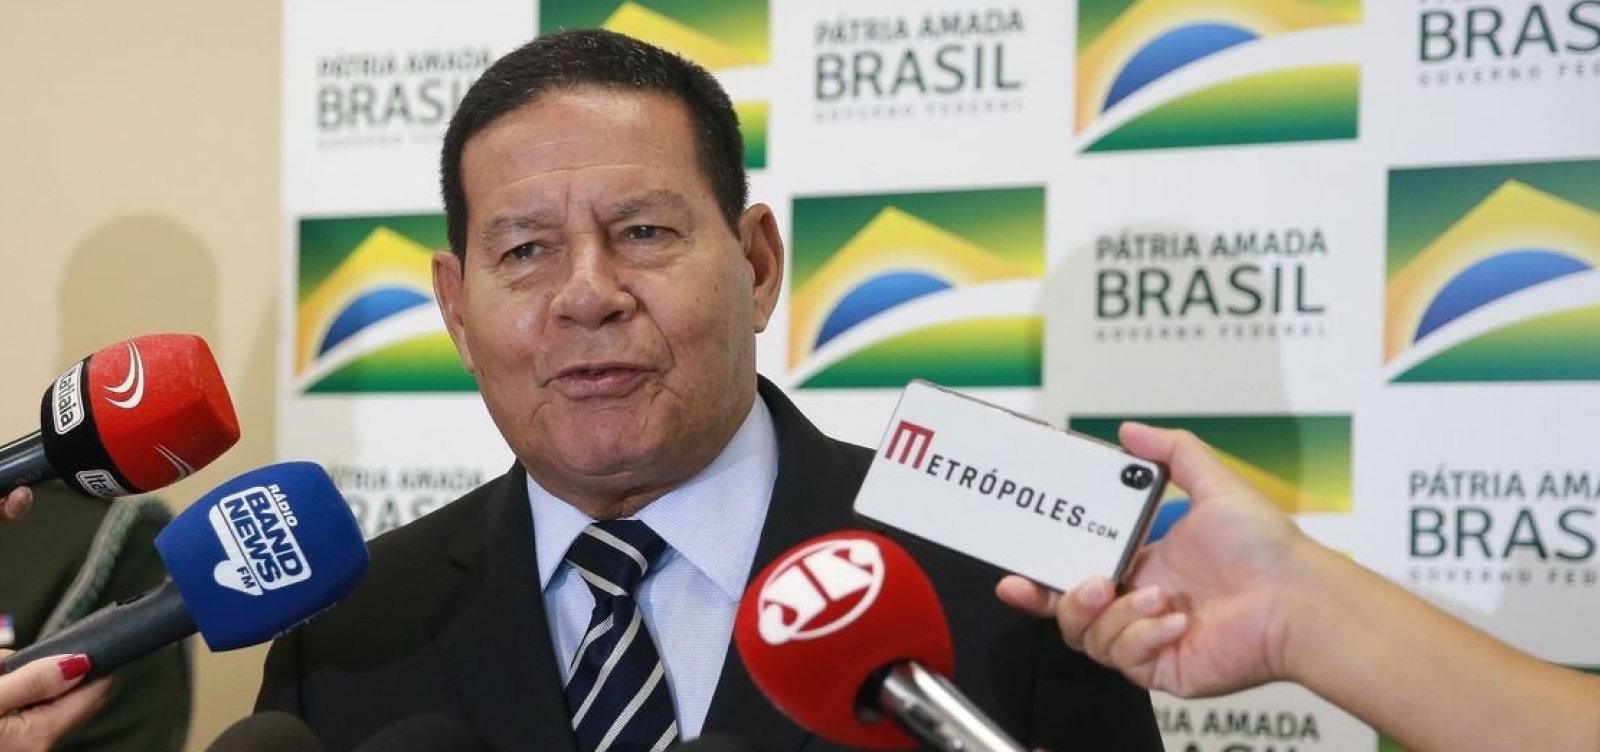 Governo vai editar MP para chamar funcionários aposentados do INSS, diz Mourão